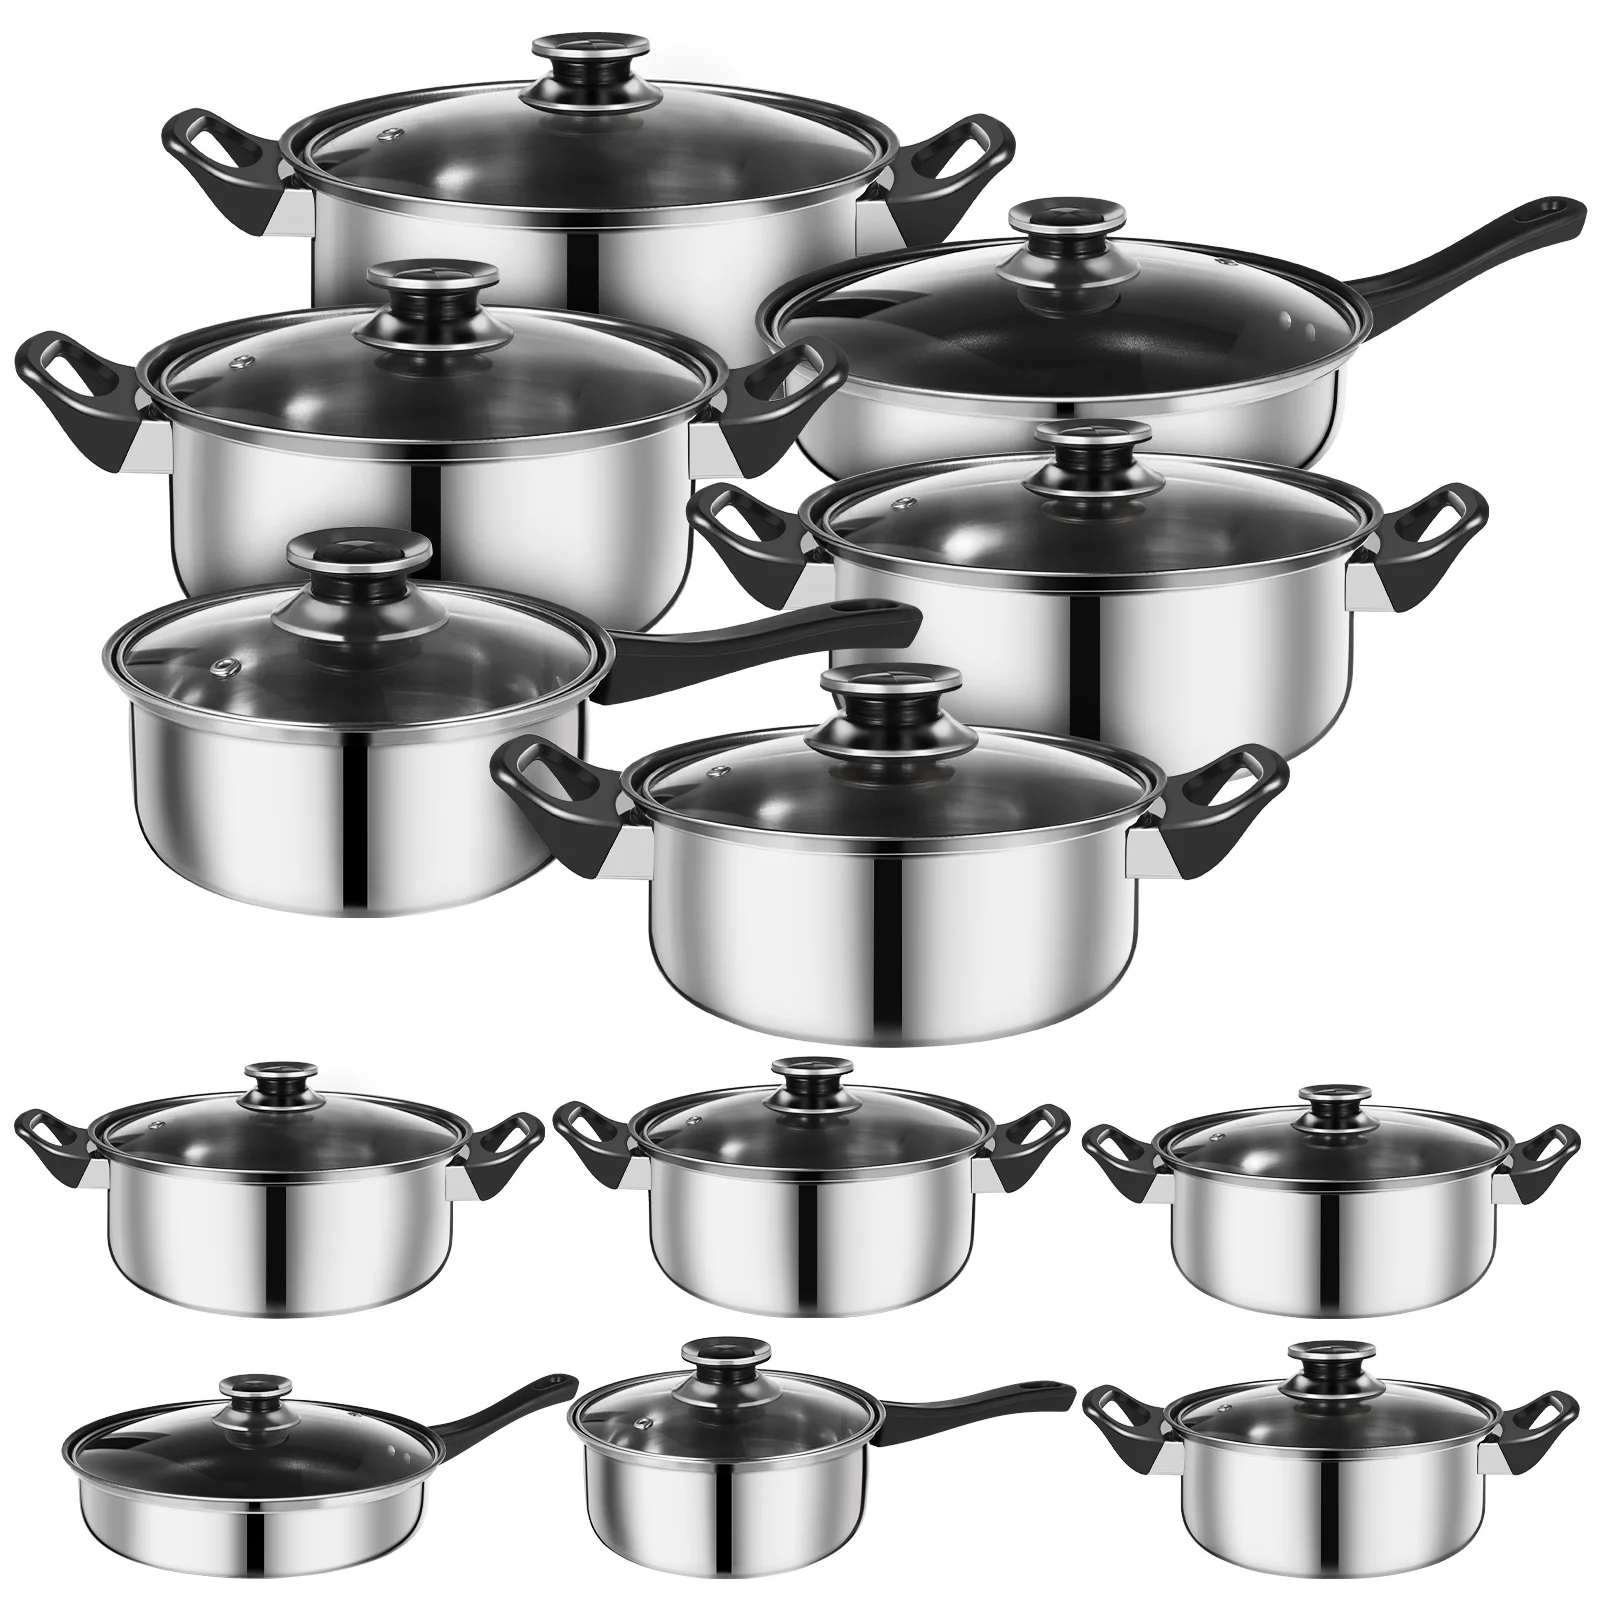 

12 Pcs Pots Stainless Steel Cooker Piece Set Cookware Saucepan Cooking Utensils